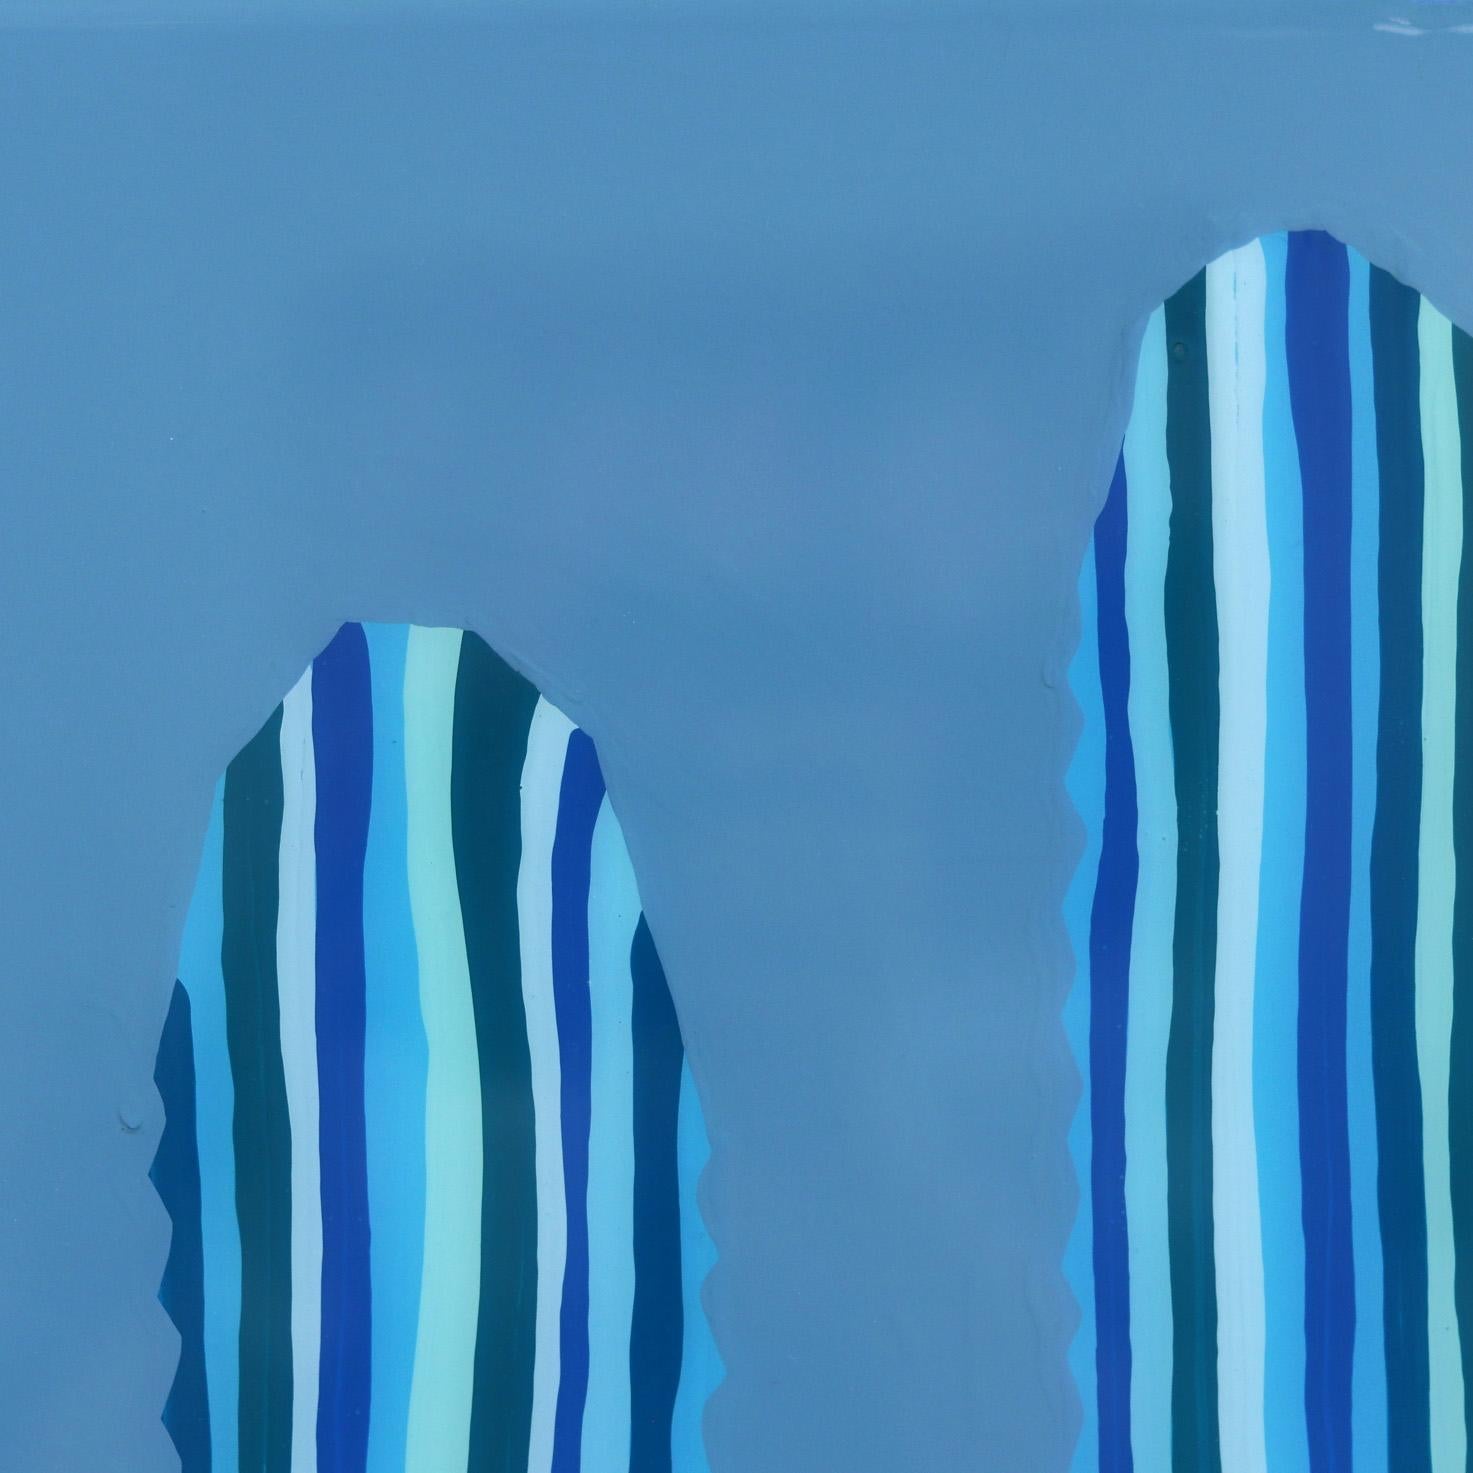 Saphir – lebhaftes blaues, vom Südwesten inspiriertes Pop-Art-Kactus-Gemälde (Amerikanische Moderne), Painting, von Will Beger